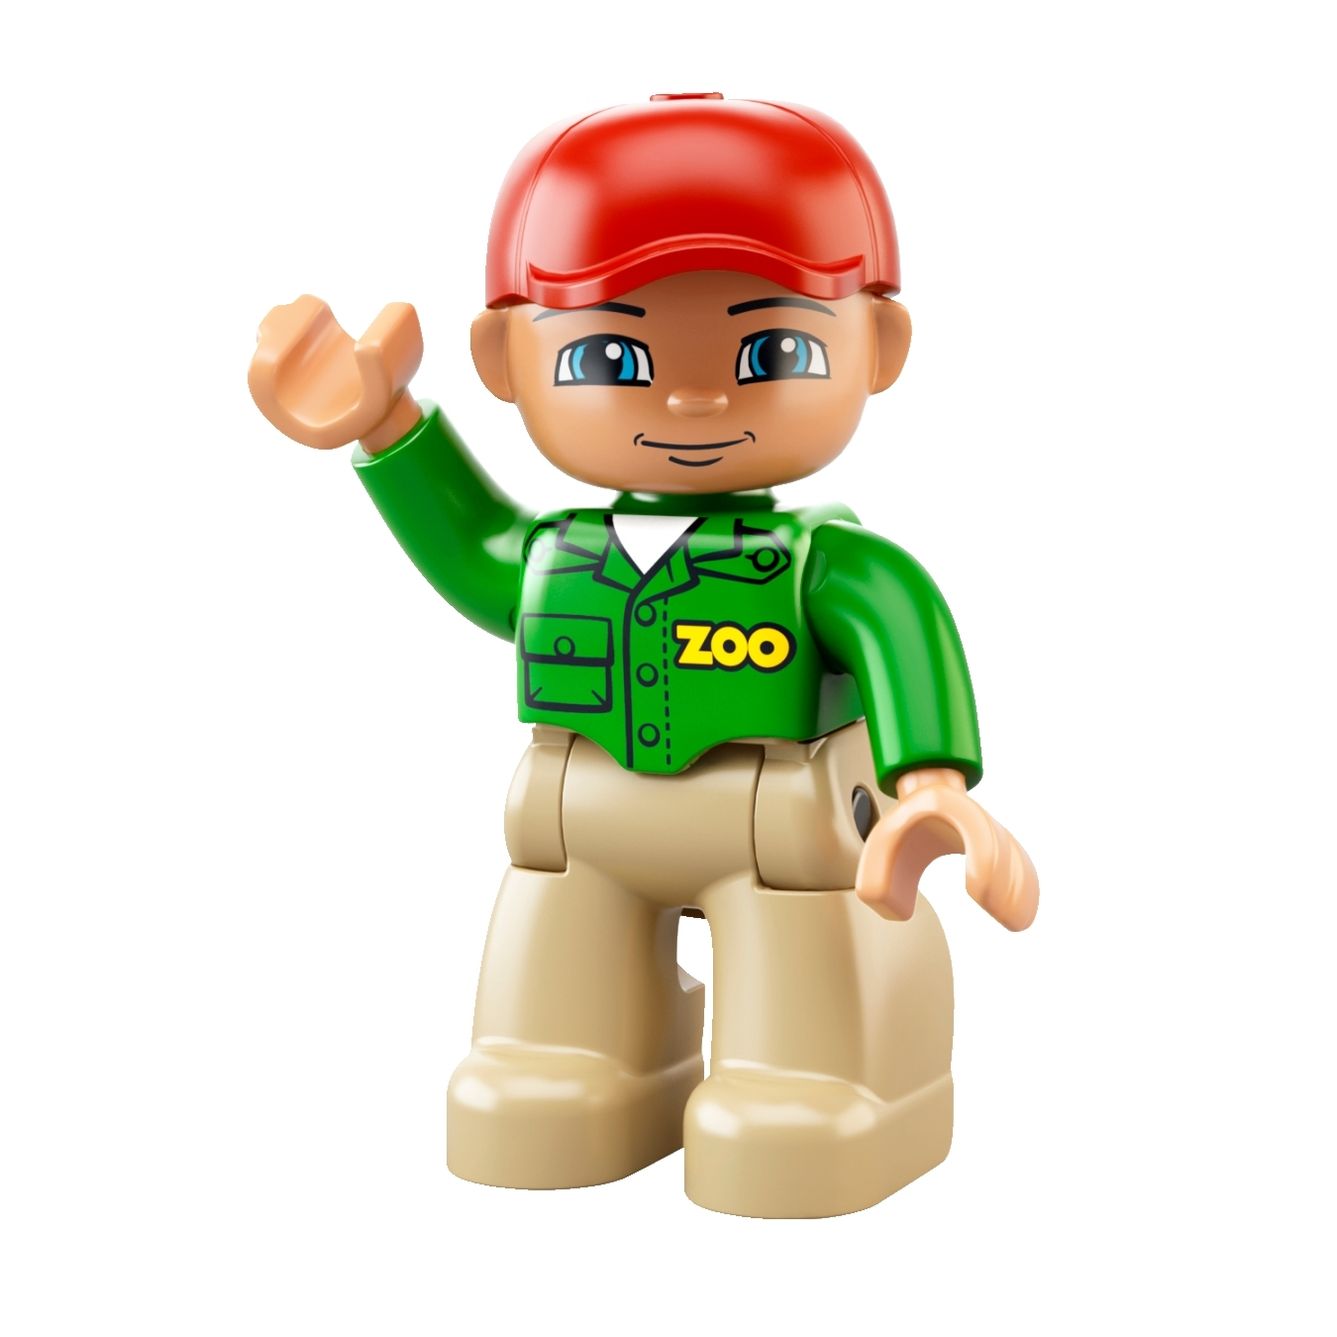 LEGO 6172 Duplo Zootransporter jetzt bei Weltbild.de bestellen